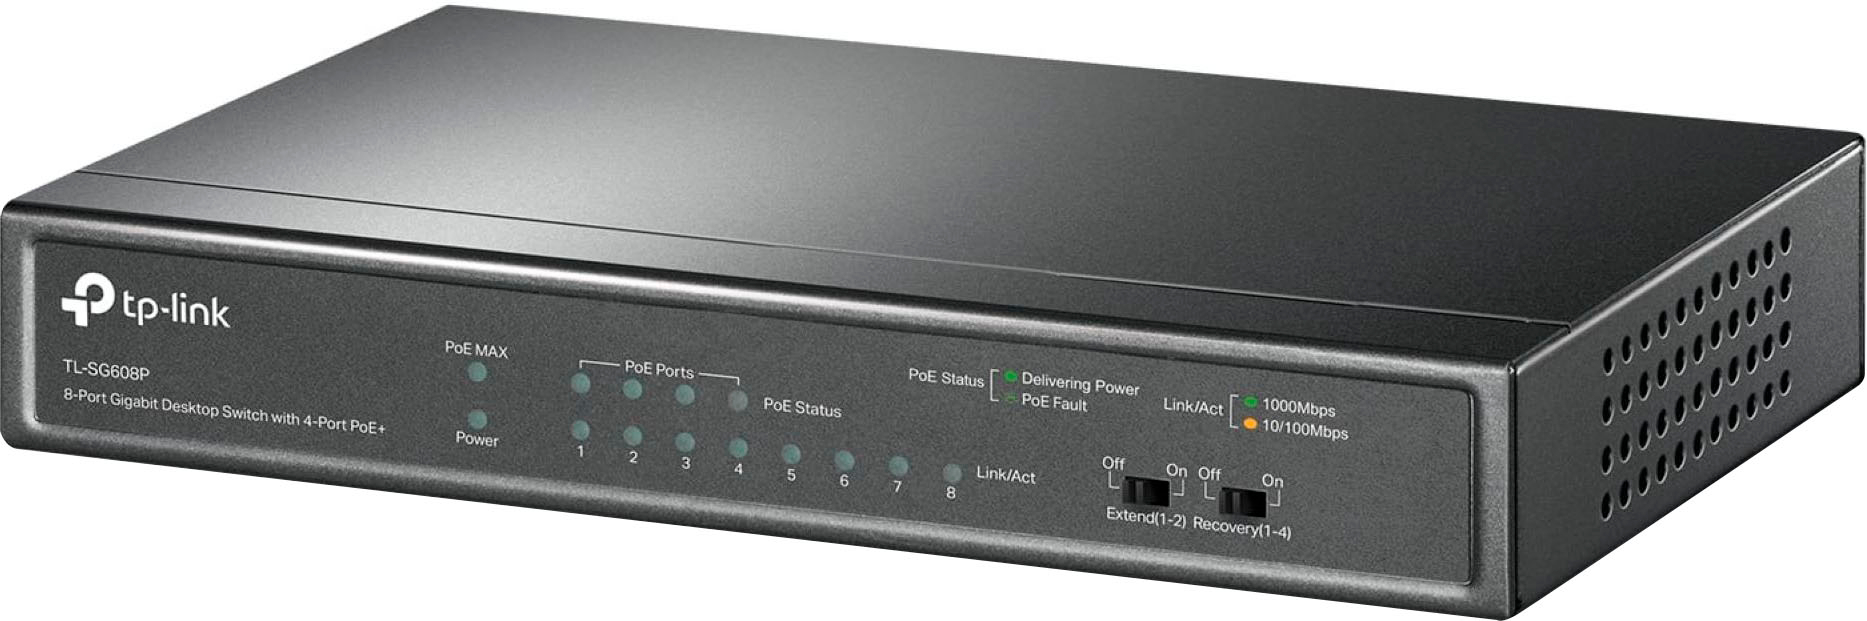 TP-LINK 8-Port Gigabit Desktop PoE Switch with 4-Port PoE+